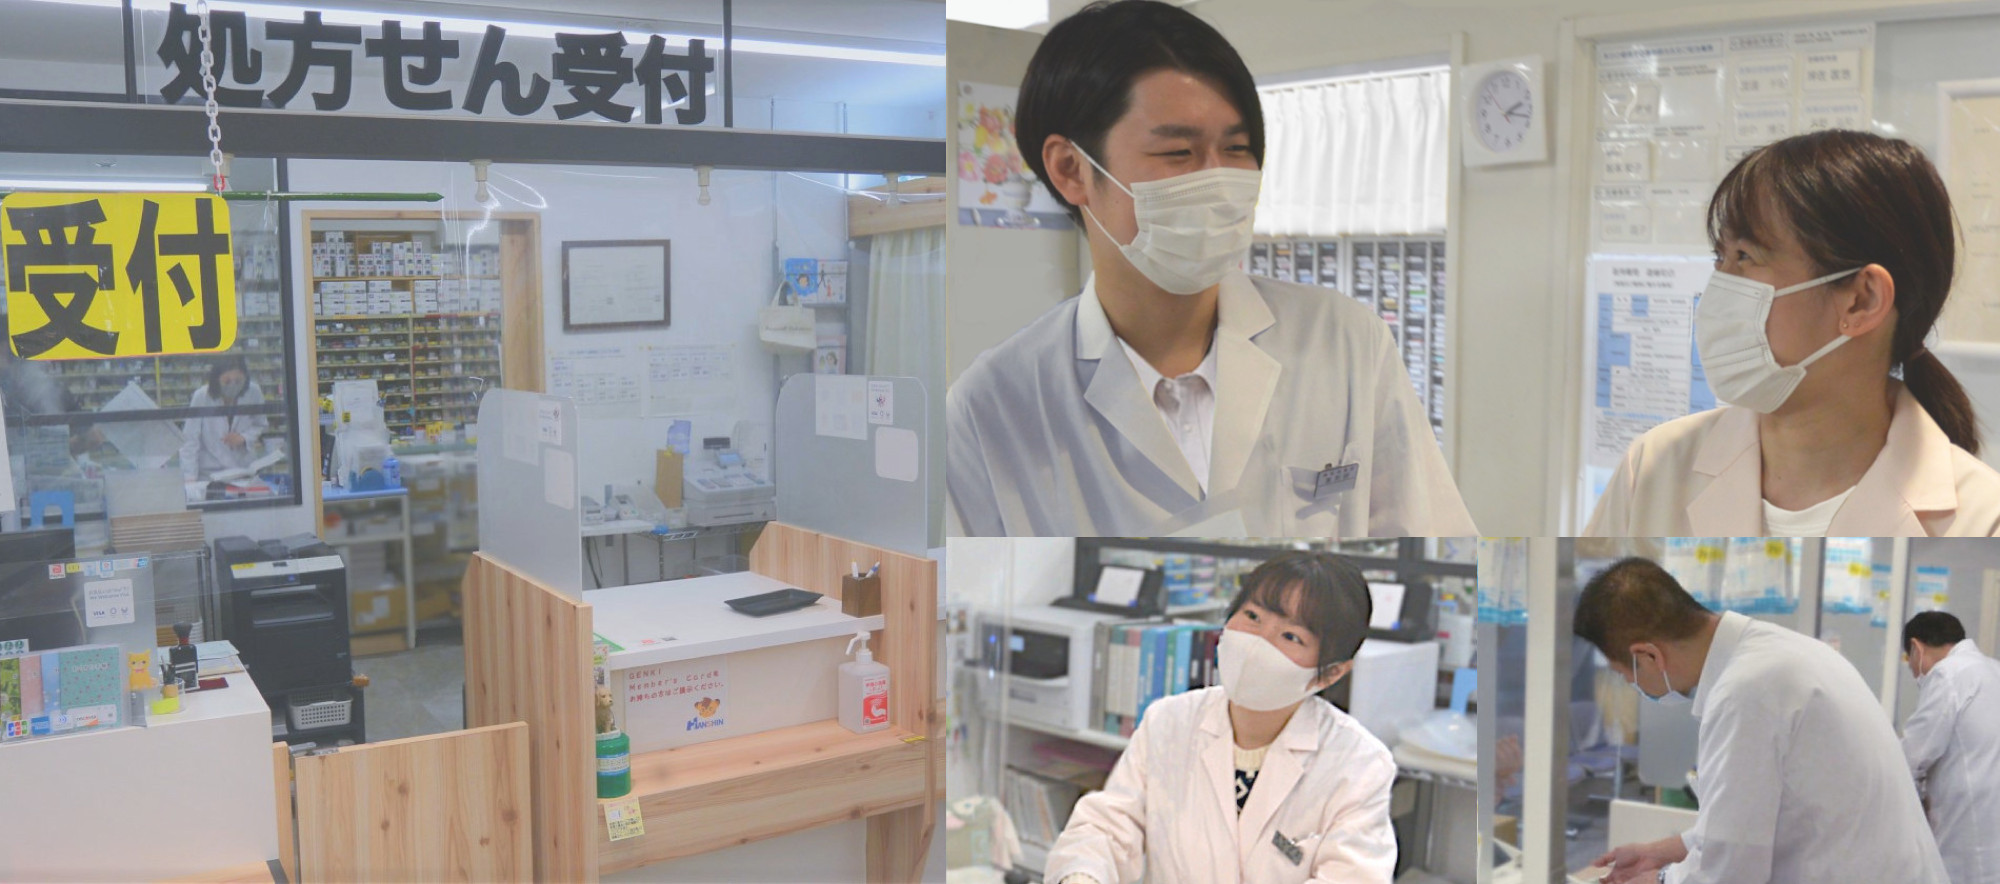 阪神薬局は世の為・人の為になることを目指しております。